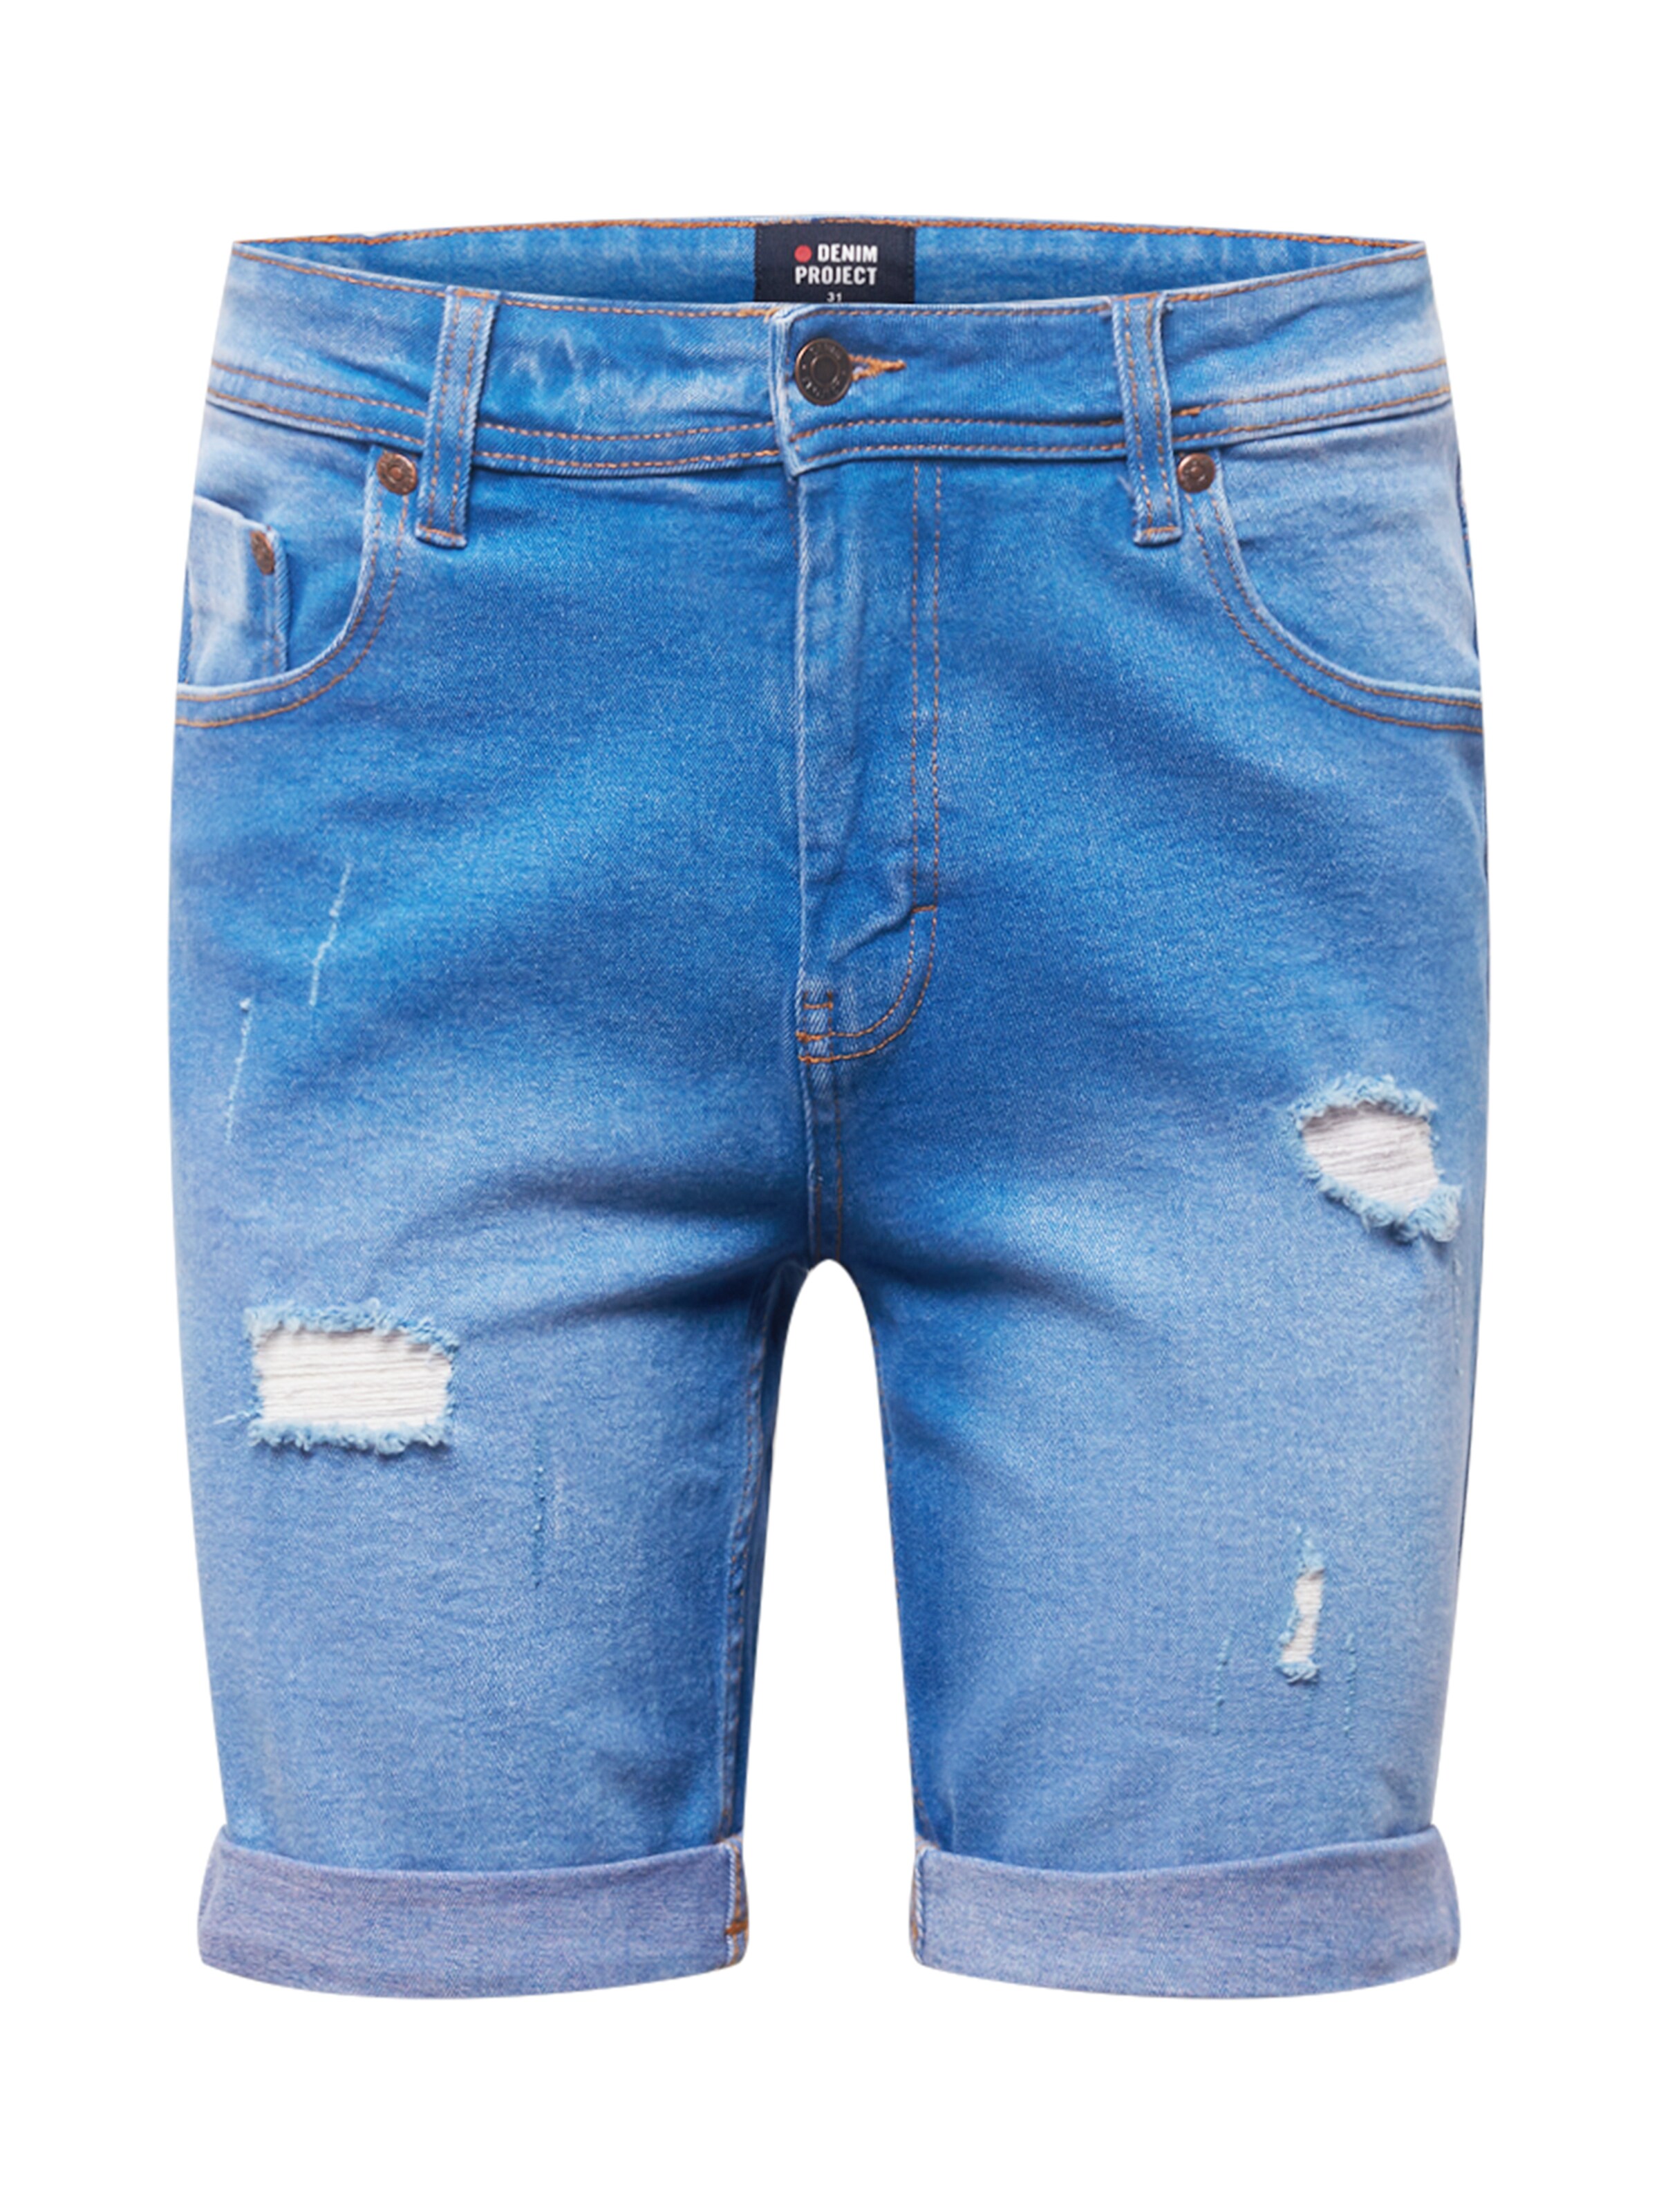 OG0J3 Pantaloni Denim Project Jeans Mr Orange in Blu 